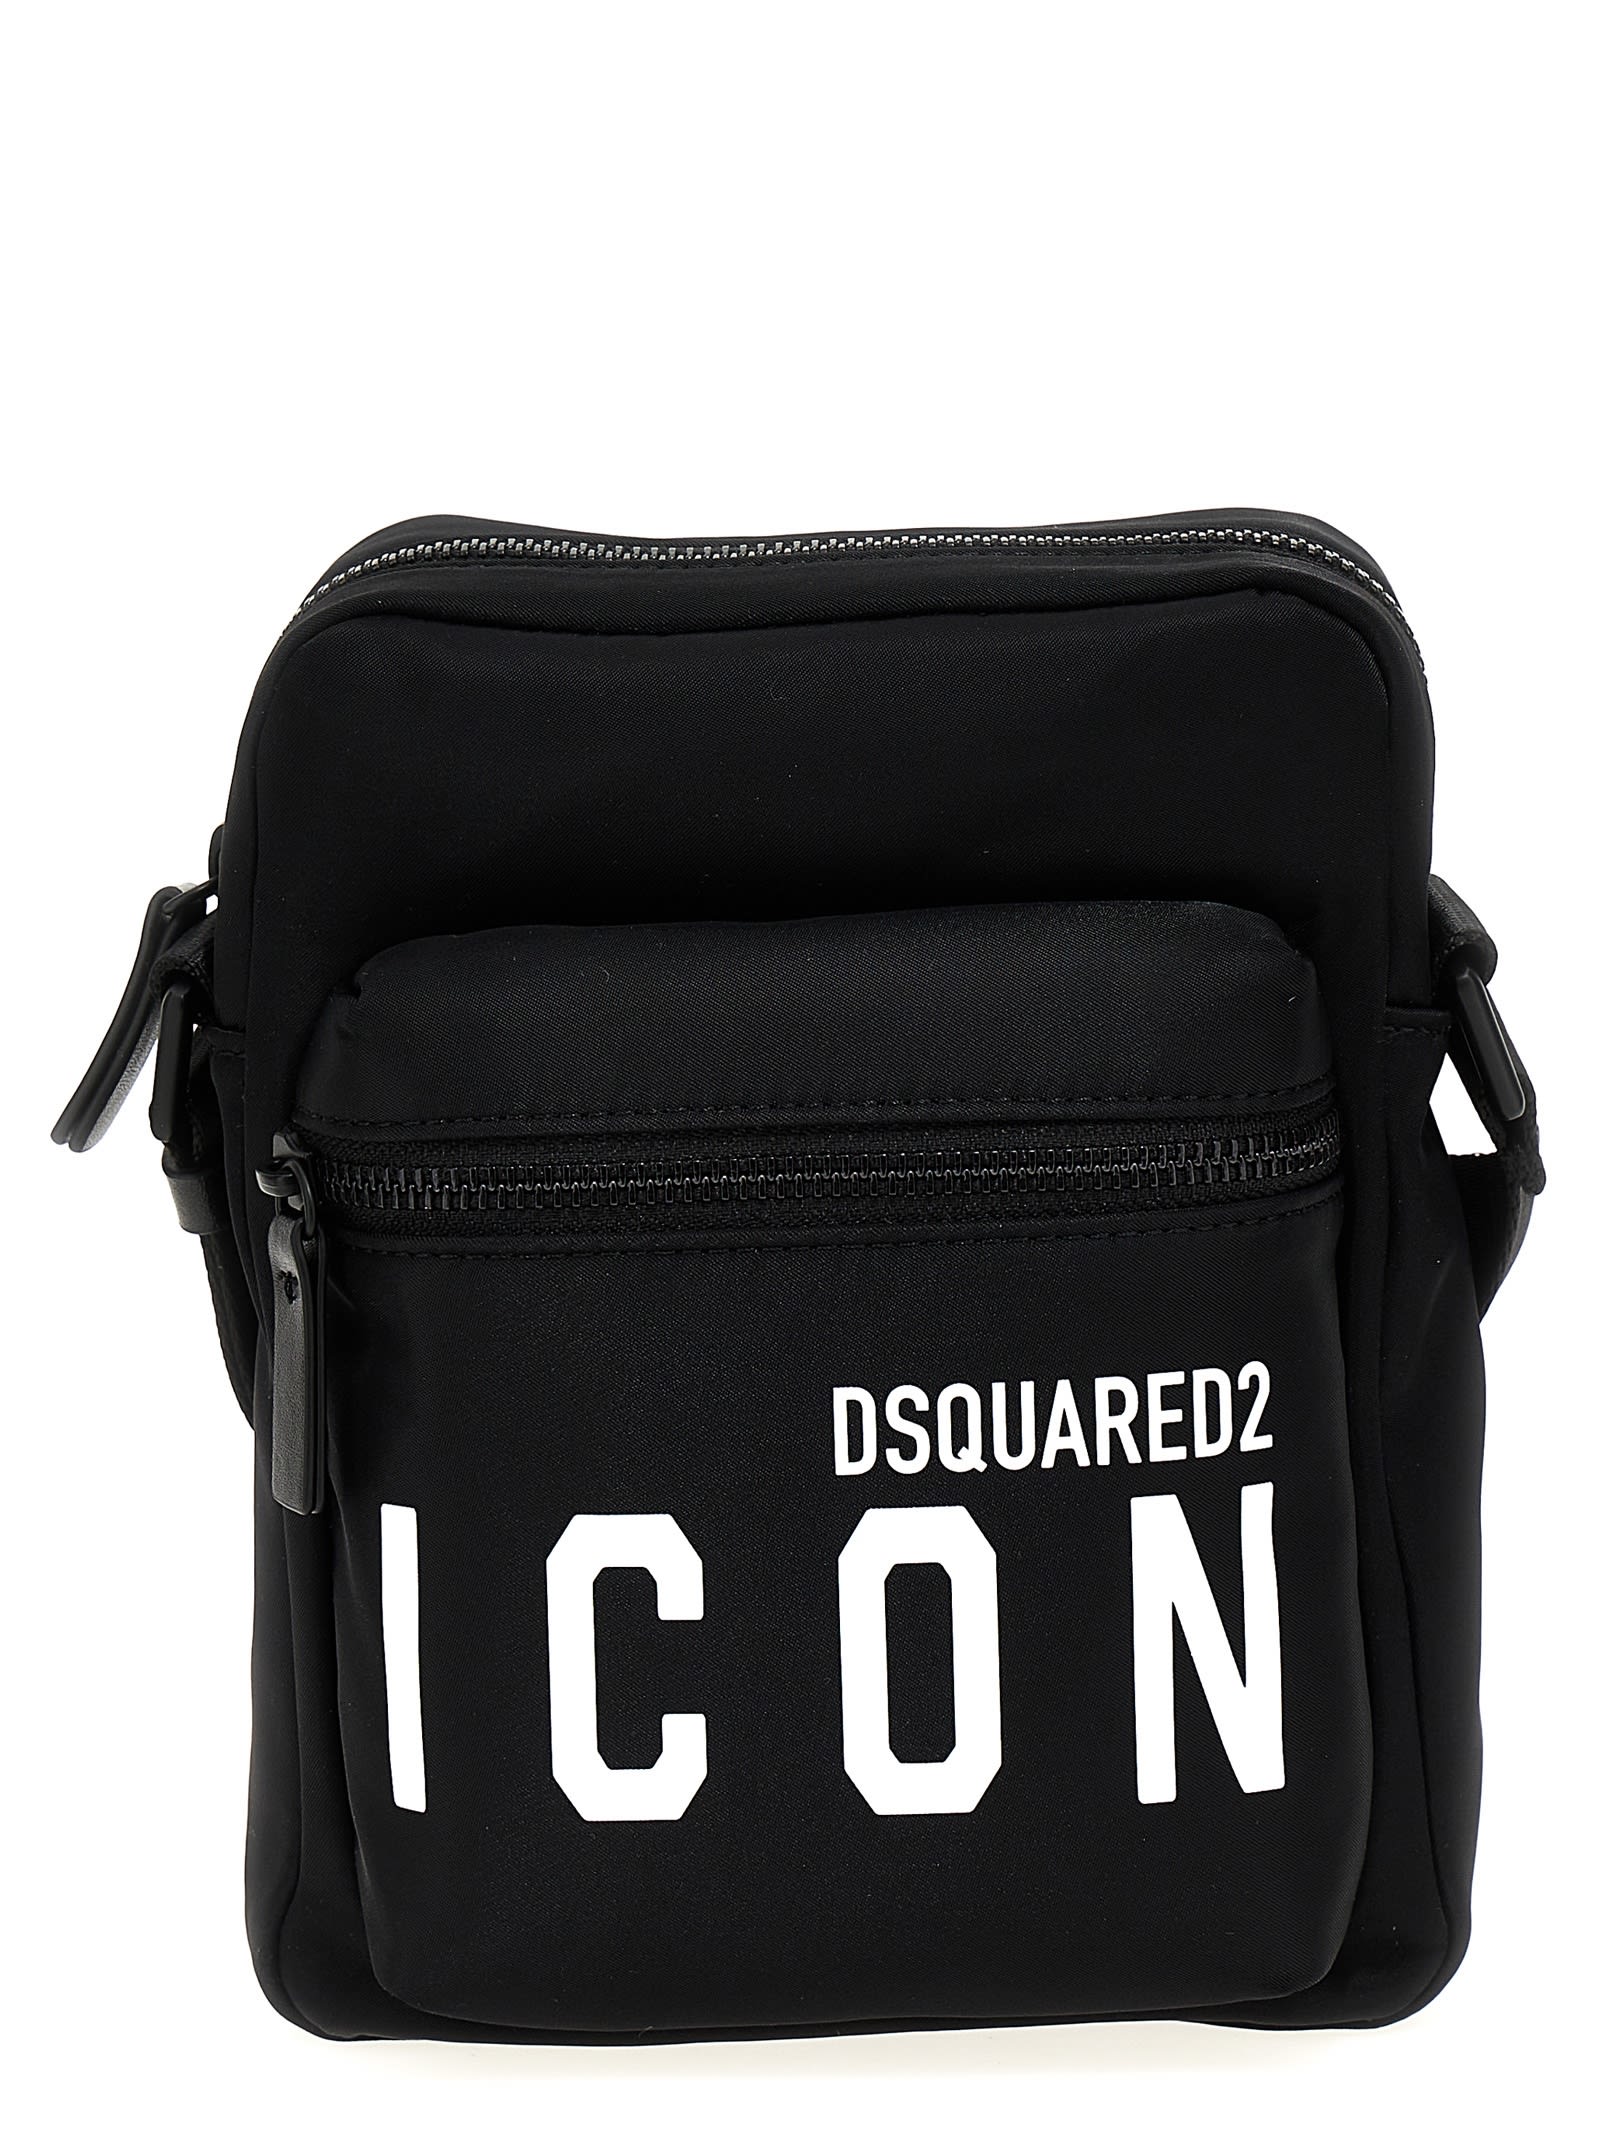 Dsquared2 Icon Cross Body Bag Black In White/black